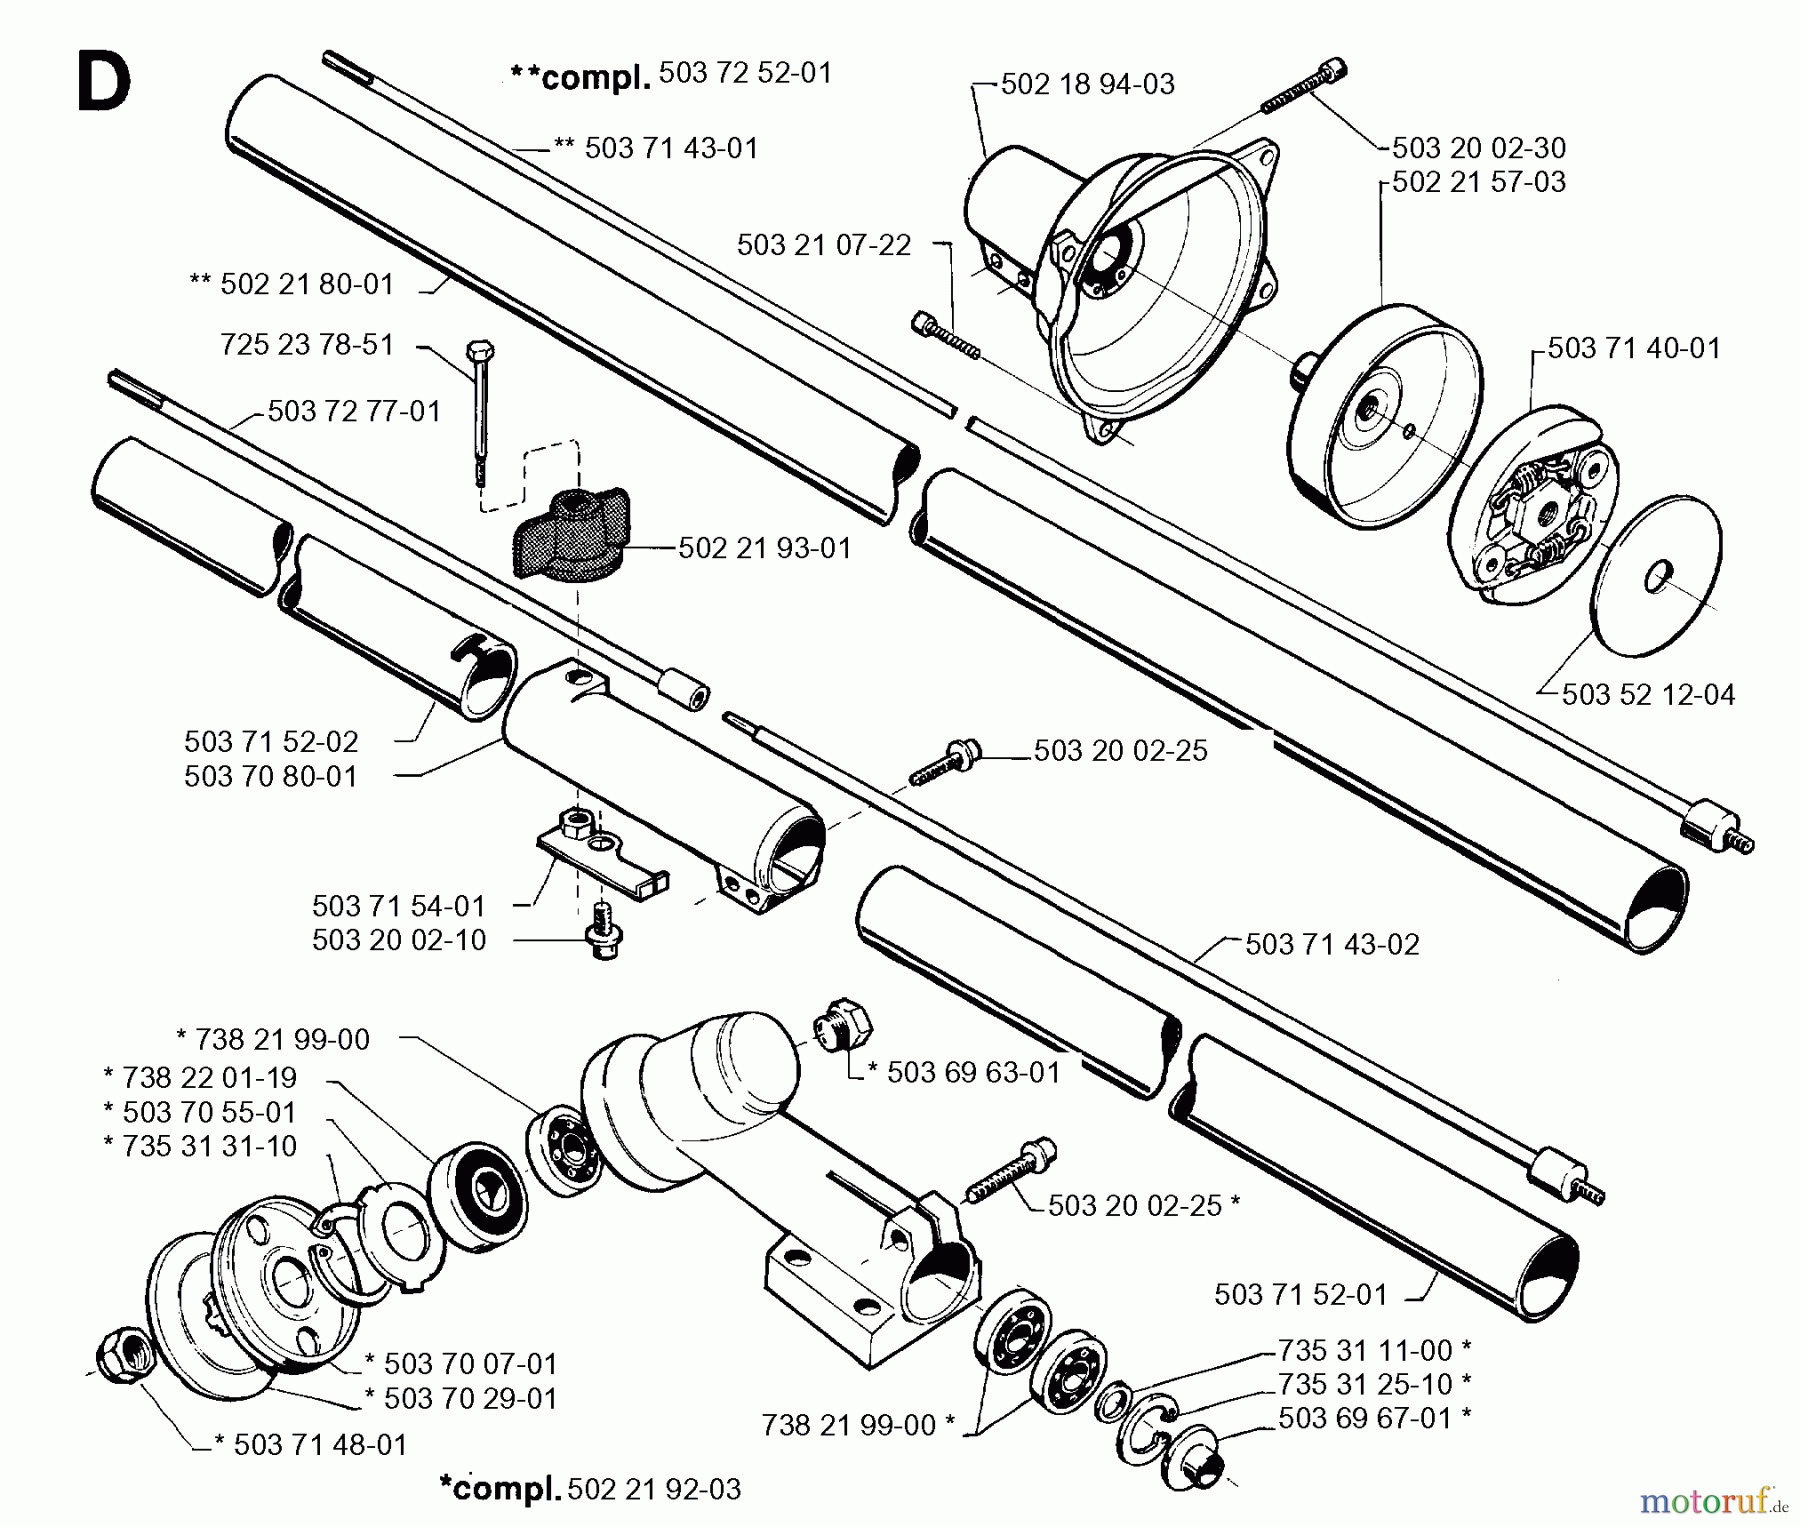  Jonsered Motorsensen, Trimmer GR26 - Jonsered String/Brush Trimmer (1994-11) BEVEL GEAR SHAFT